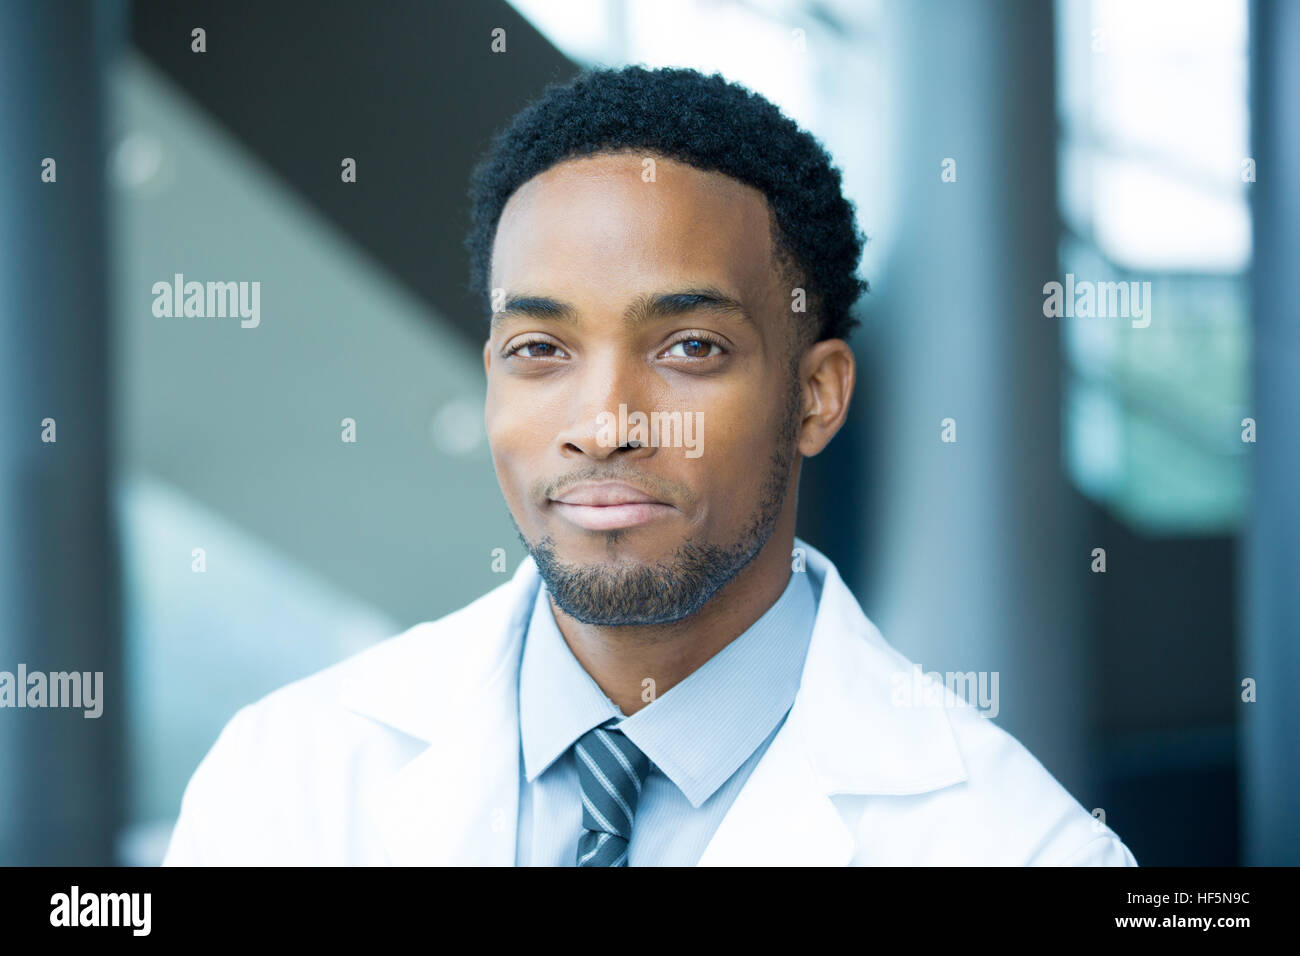 Closeup portrait head shot of friendly, sourire confiant homme professionnel de santé avec une couche de blanc, Hôpital clinique isolé arrière-plan. Banque D'Images